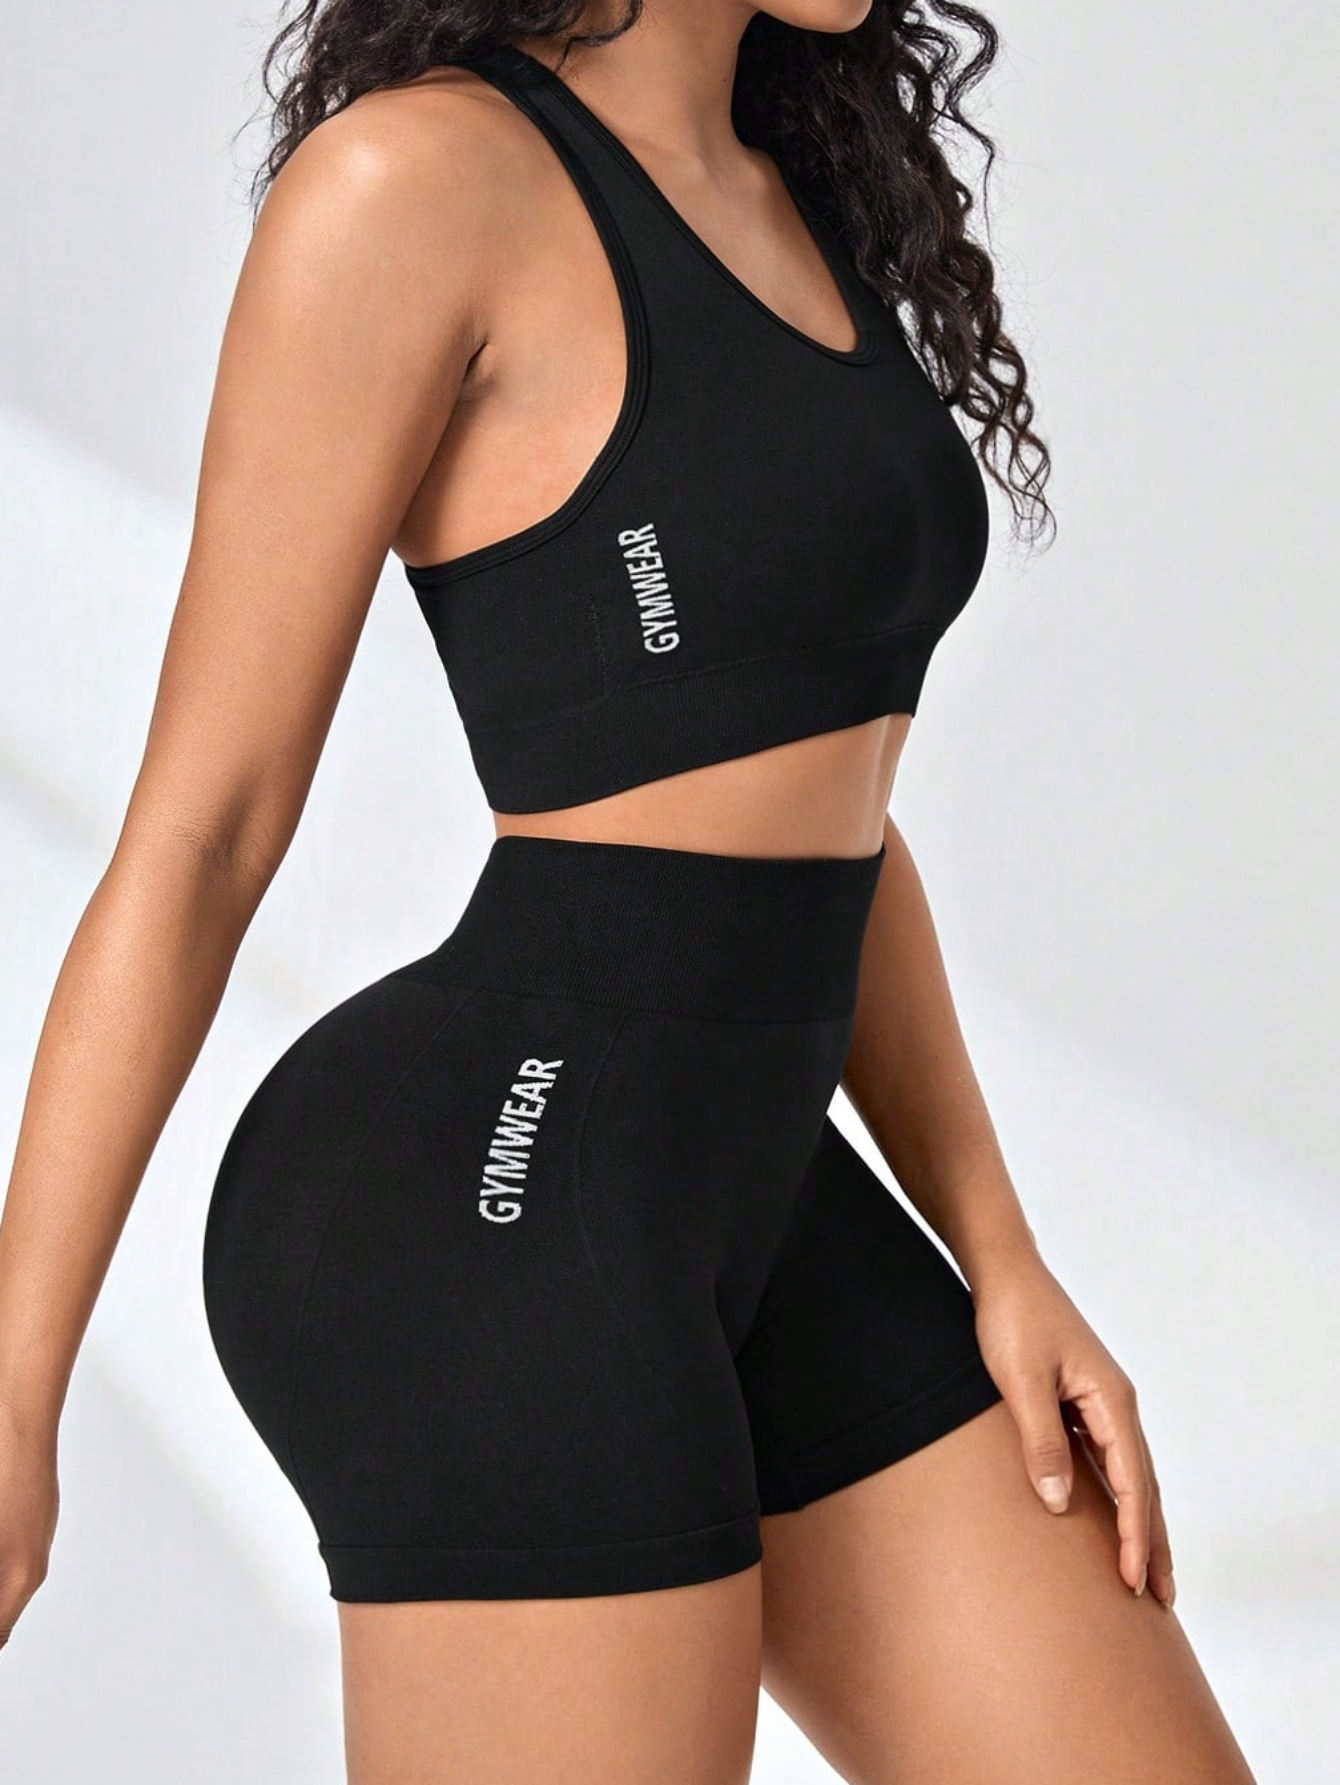 Seamless Women Yoga Set Workout Shirts Sport Pants Bra Gym Clothing Short  Crop Top High Waist